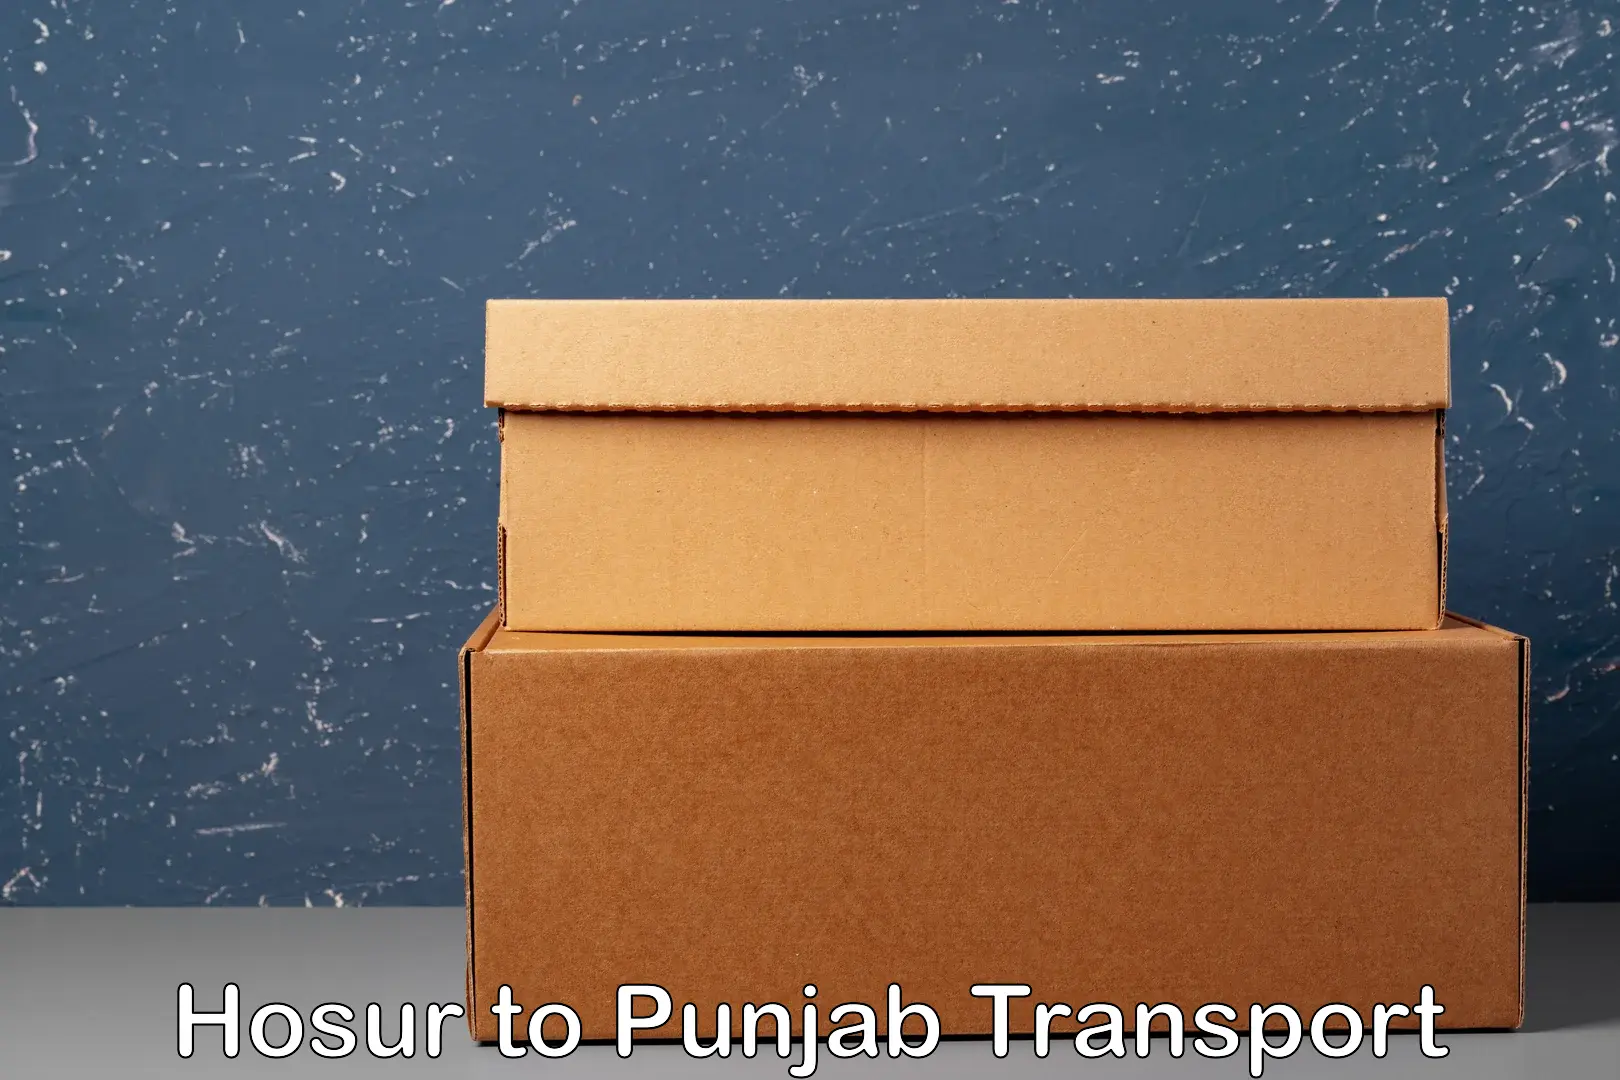 Shipping partner Hosur to Punjab